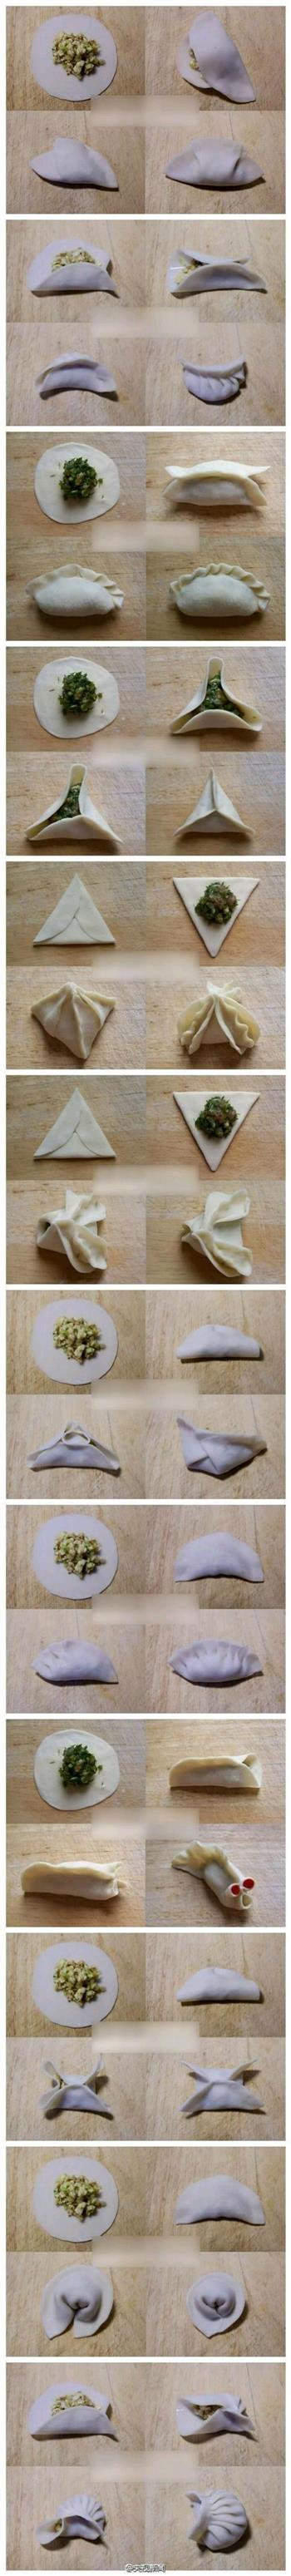 白菜香菇素饺子的做法图解8